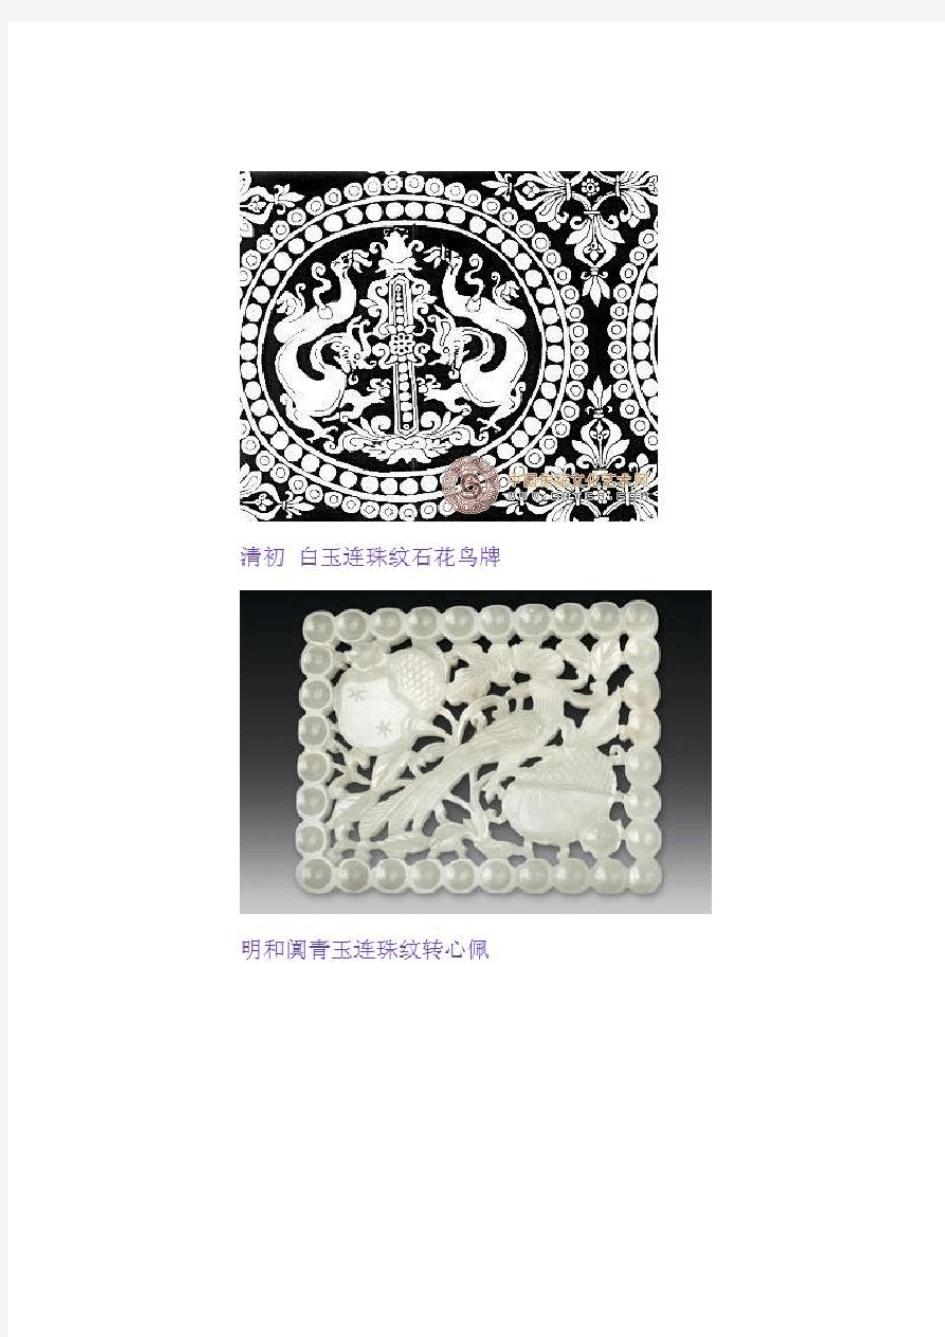 2020年中国传统纹样 几何纹样篇